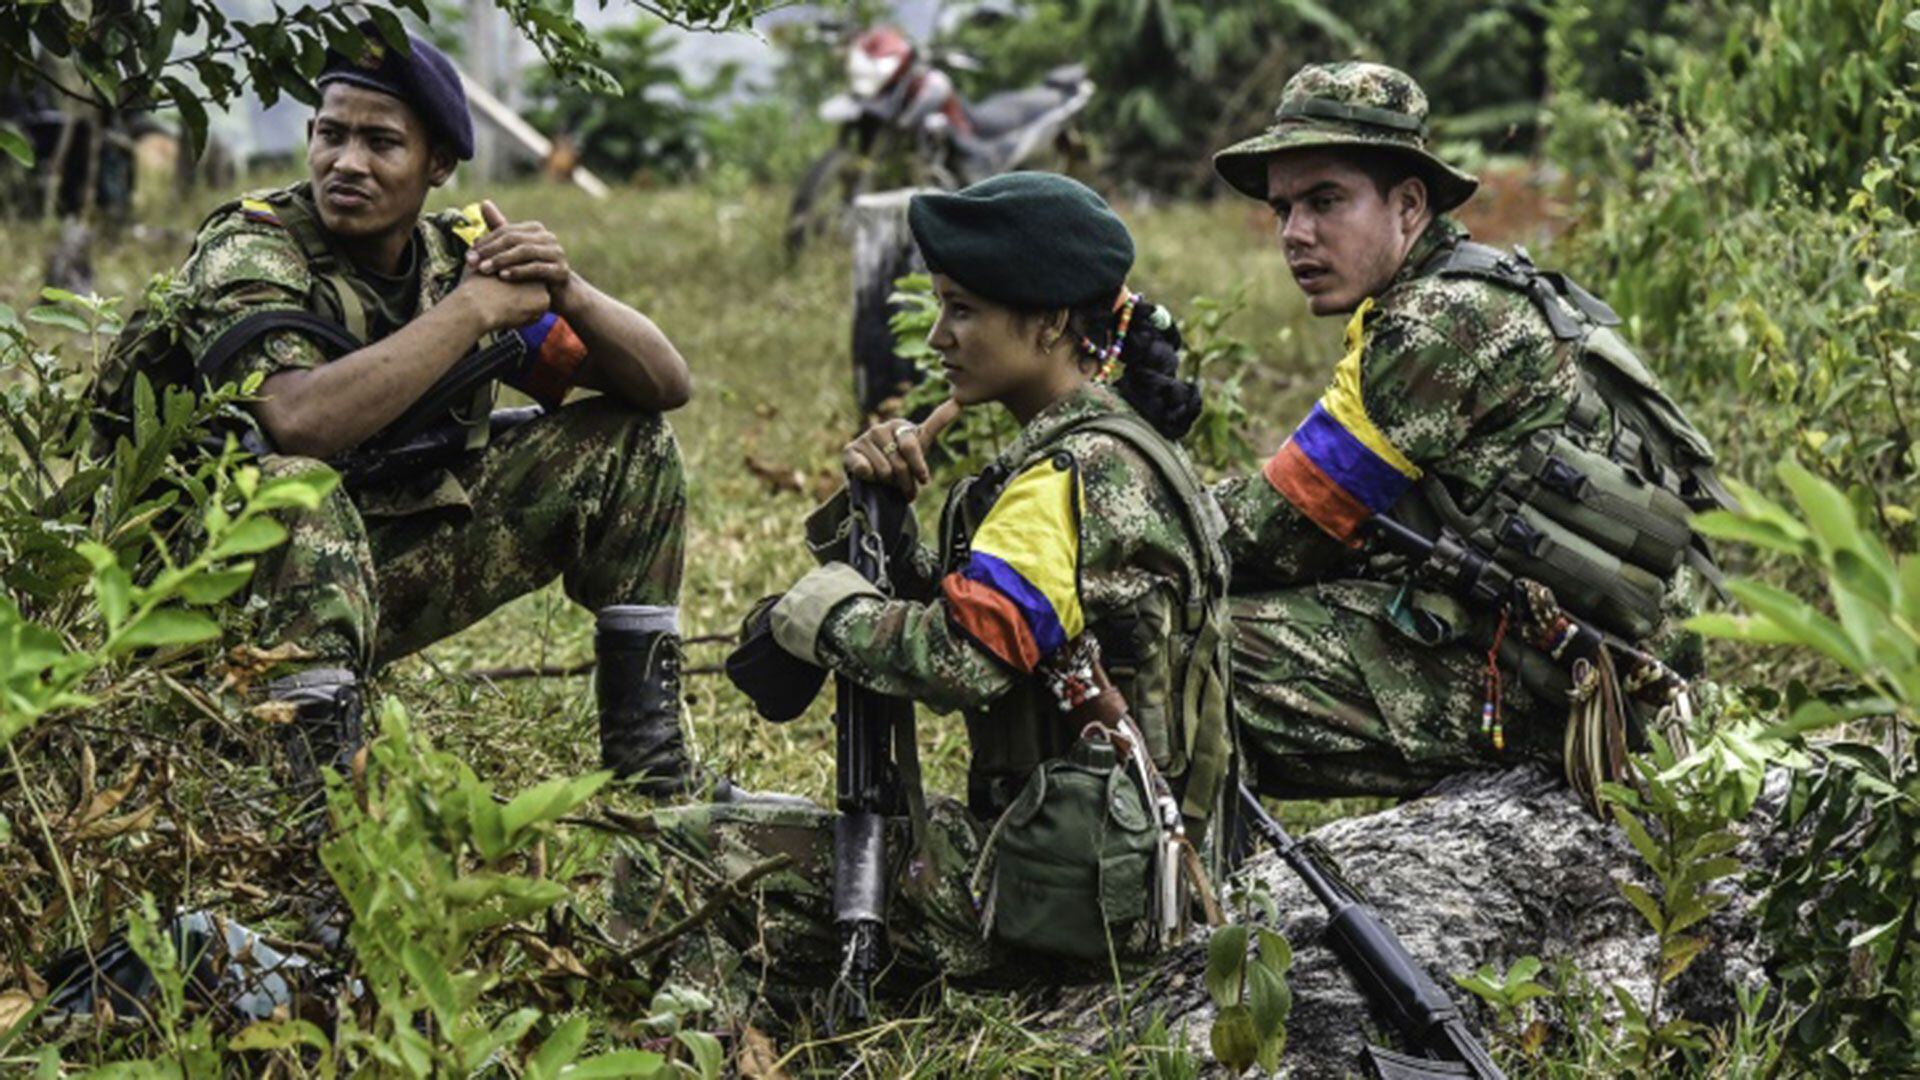 Las FARC llegaron a ocupar parte importante del territorio del país